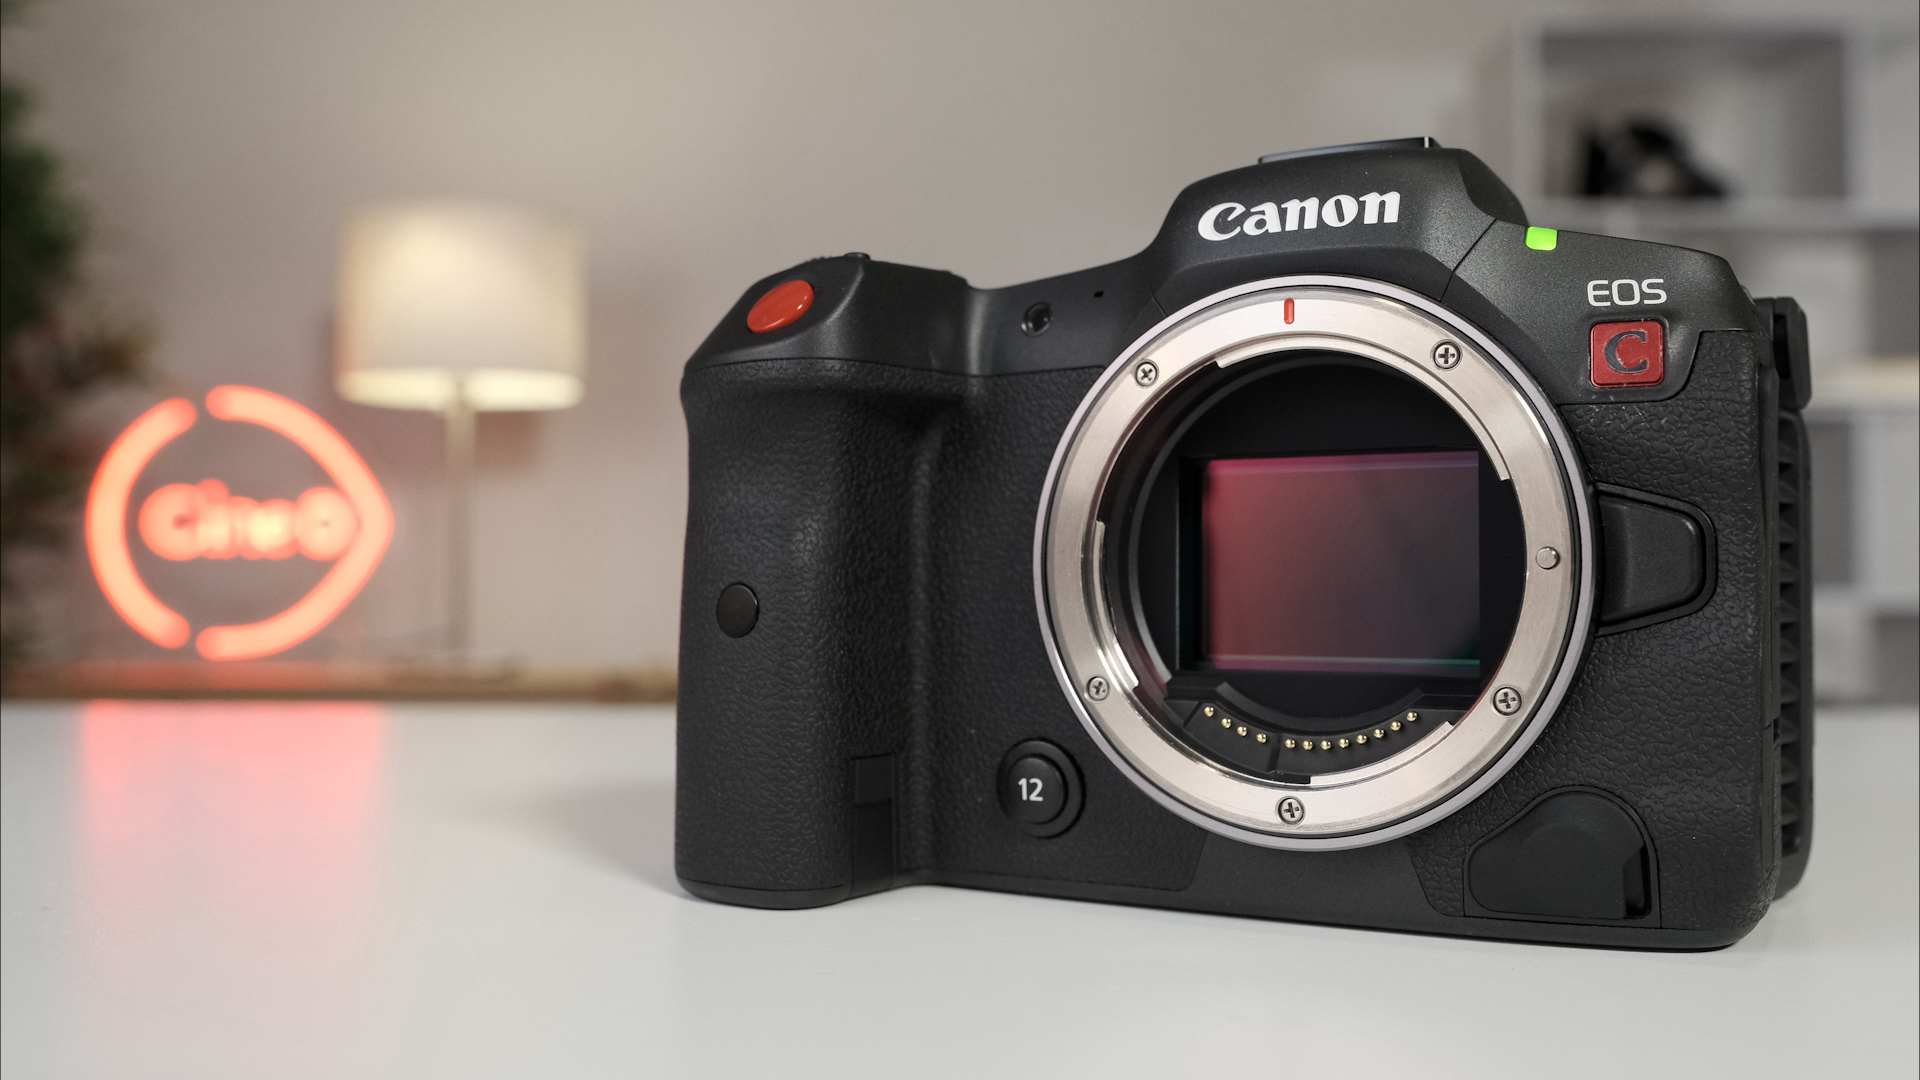 Canon's Development Technique 32 New RF Lenses by 2025 Venzux